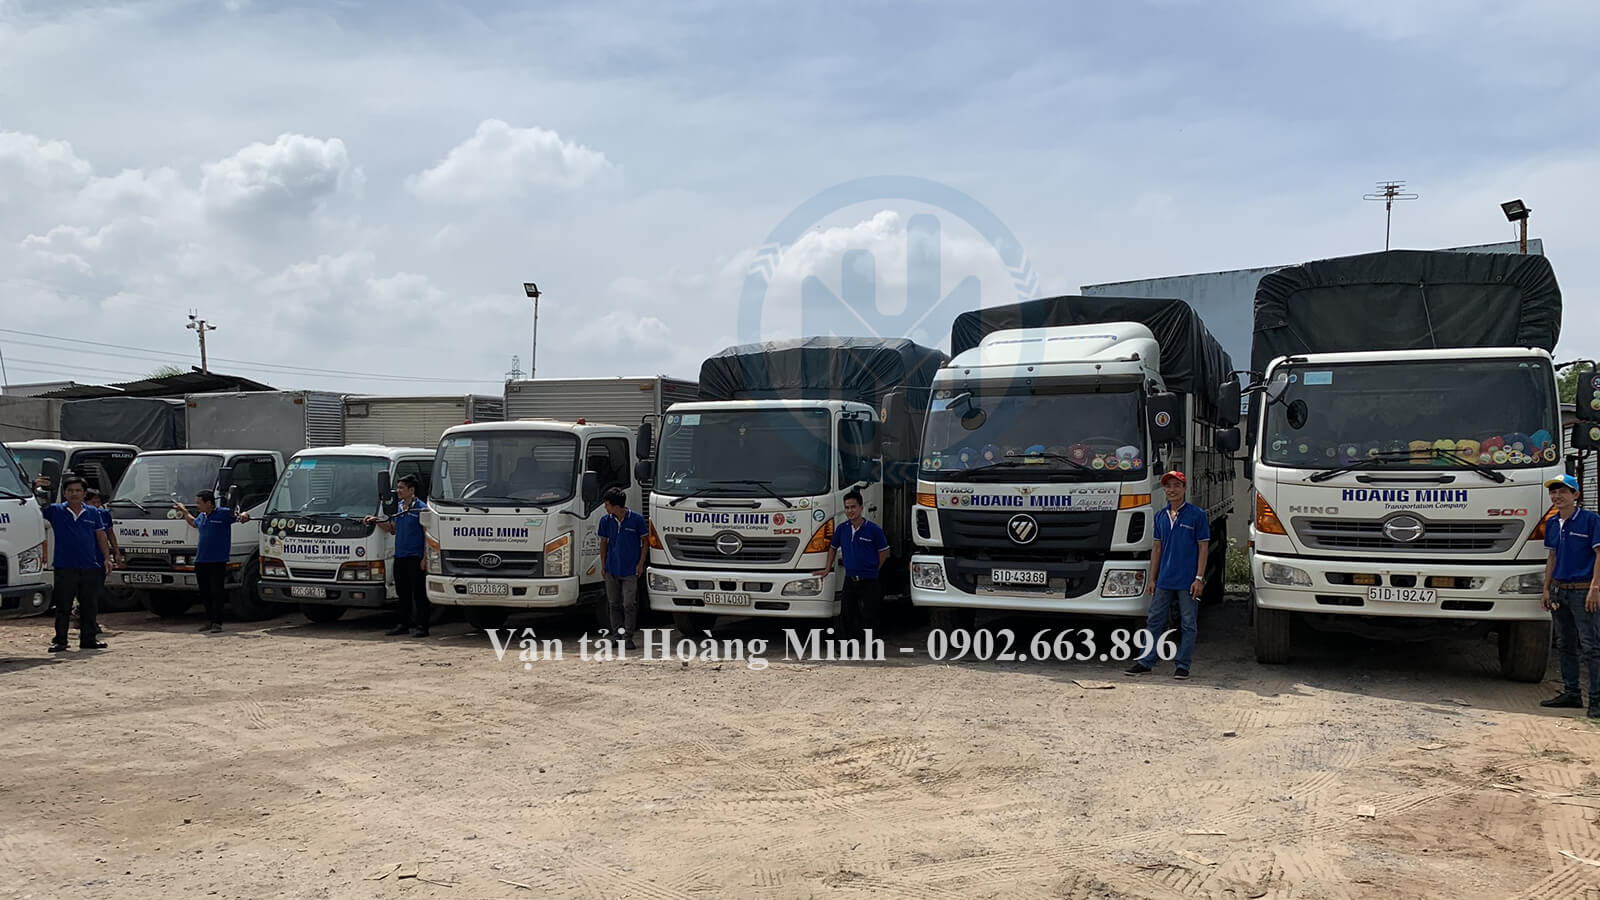 Vận tải Hoàng Minh có cho thuê xe tải chở hàng đi các tỉnh trên toàn quốc